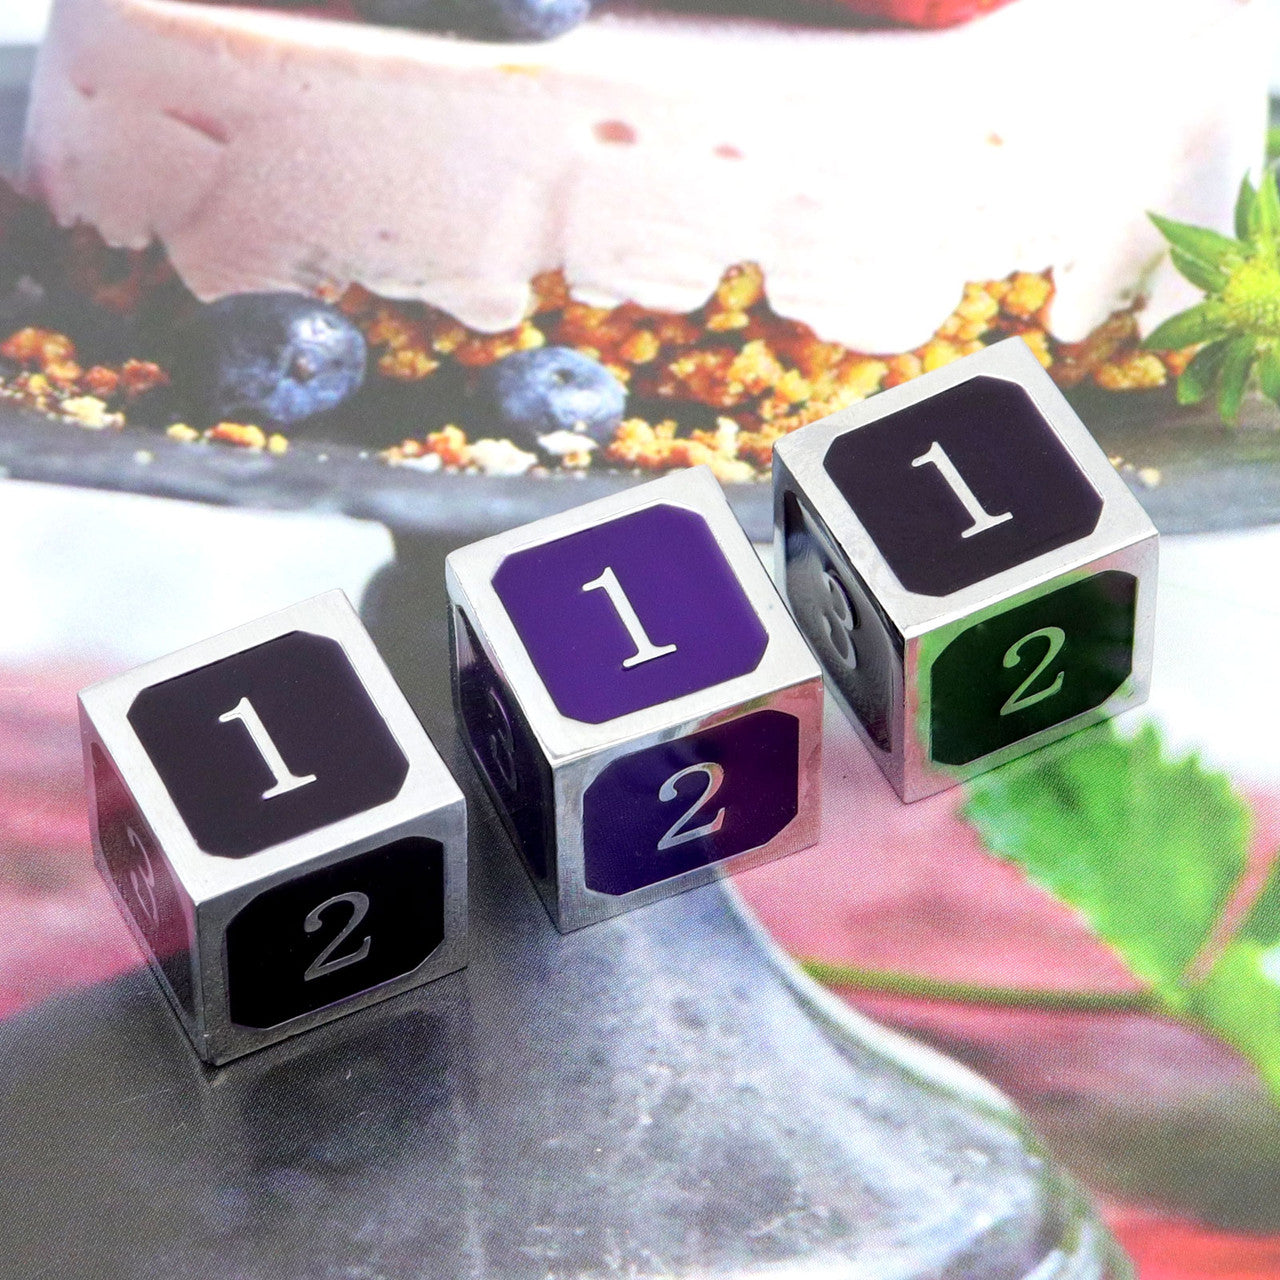 heat sensitive dice, color changing dice, color shift dice, haxtec dice, metal d6 dice, single metal d6 die, silver purple dice, purple dice, silver metal dice, purple black dice